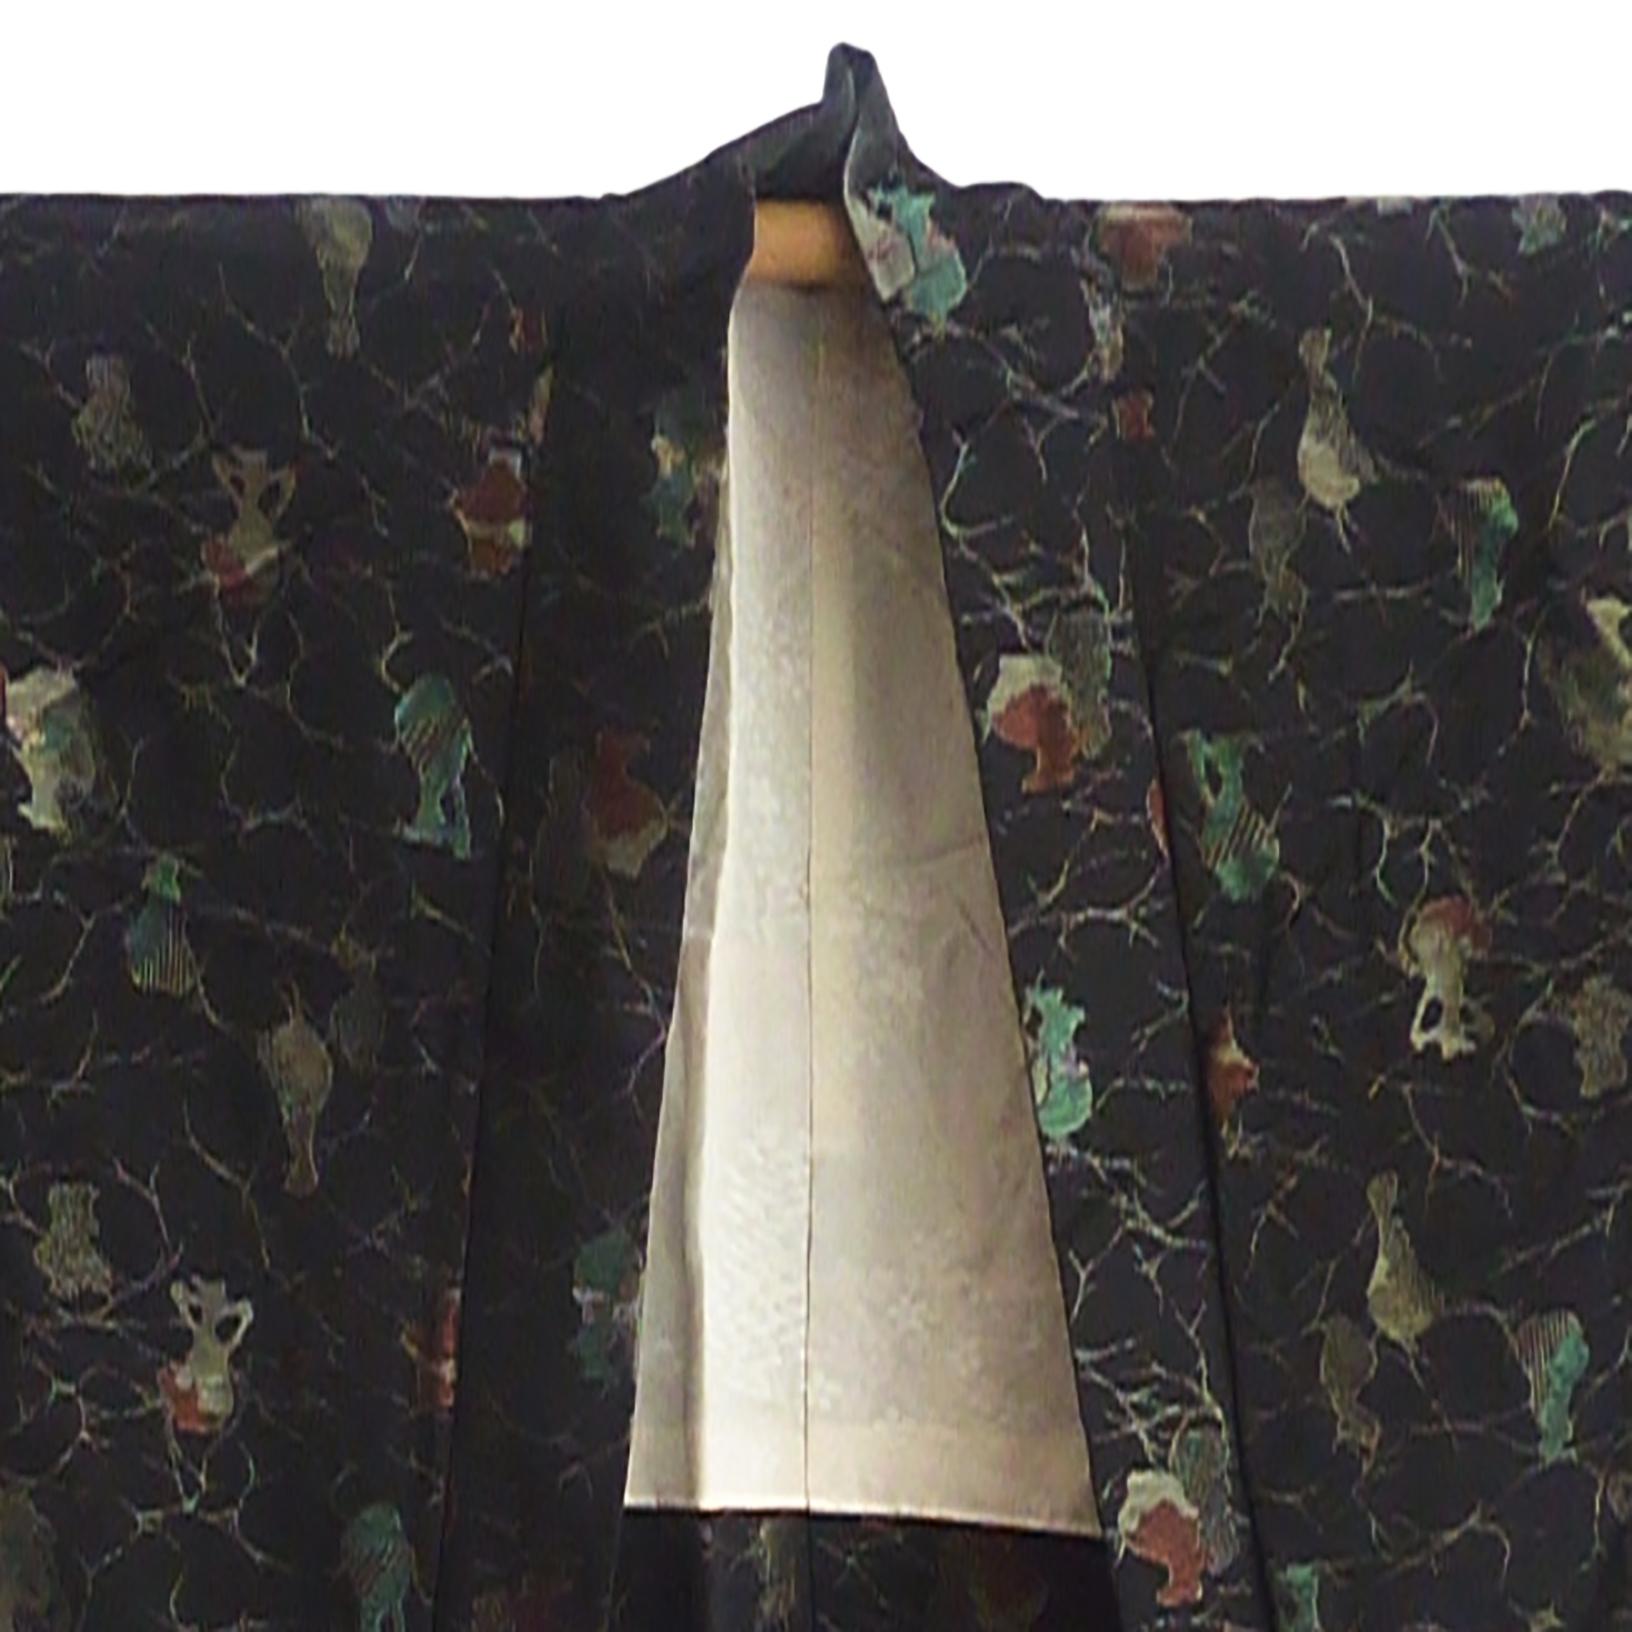 Veste kimono unisexe Haori avec des manches profondes et subtilement spectaculaires.
Tissu : Brocart de soie.
Doublure en jacquard de soie écru sakura, arbre aux fleurs de cerisier.
Circa : Meiji
Lieu d'origine : Japon
Matériau : Soie
Condition :